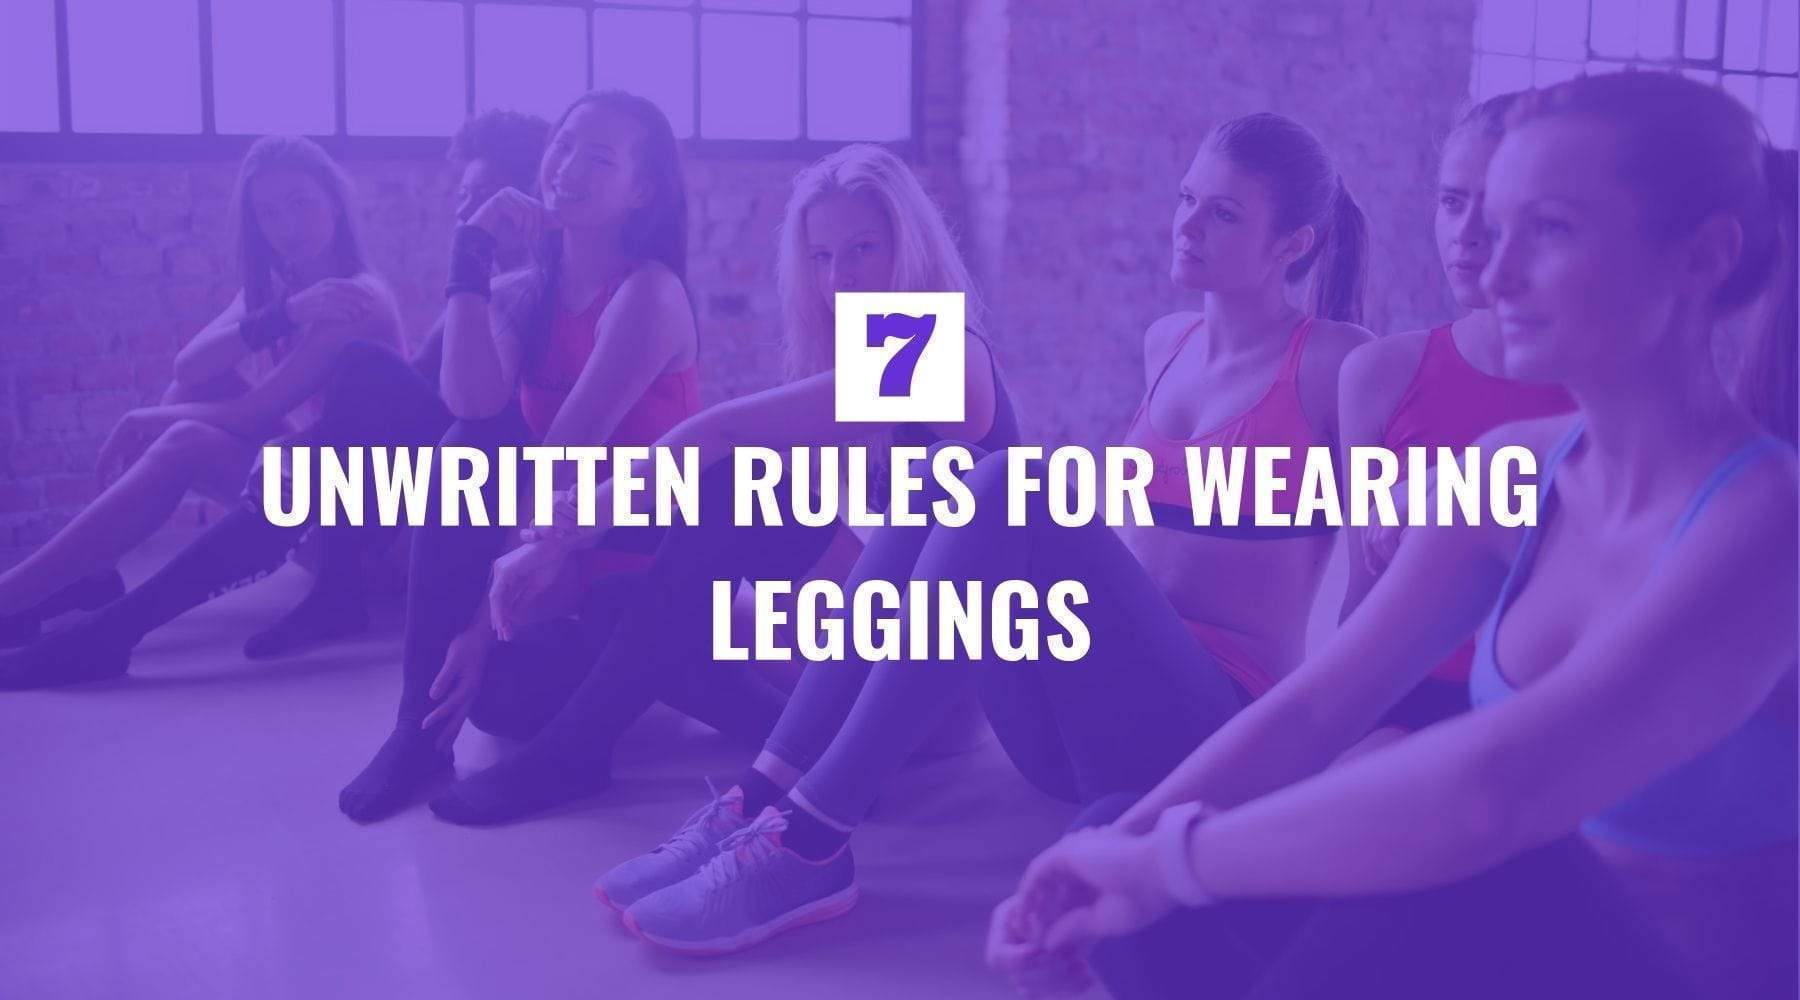 Seven Rules for Wearing Leggings